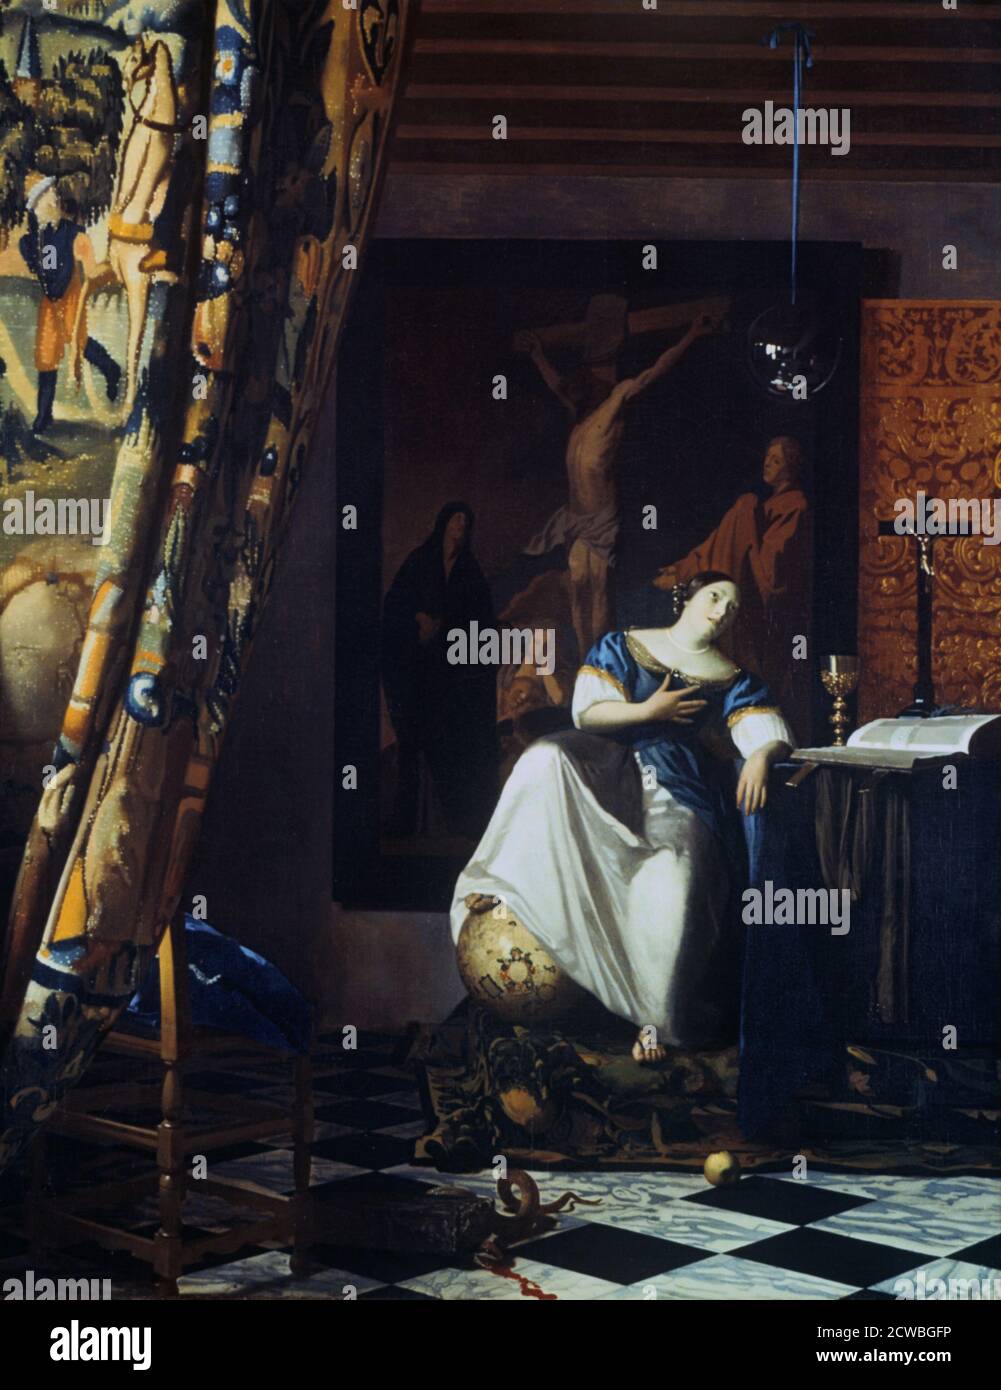 Allégorie de la foi' par Jan Vermeer, c1670. La source de Vermeer provient d'un manuel standard d'iconographie, Iconologia de Cesare Ripa. Vermeer a interprété la description de la foi de Ripa avec "le monde à ses pieds" littéralement, montrant un globe hollandais publié en 1618. Le monde divin est rendu comme une sphère de verre reflétant la pièce. La peinture de la Crucifixion sur le mur copie une œuvre de Jacob Jordaens. Parmi les nombreux symboles christologiques, les plus importants sont la pomme, emblème du premier péché, et le serpent (Satan) écrasé par une pierre (Christ, la « pierre angulaire » de l'Église). Dati Banque D'Images